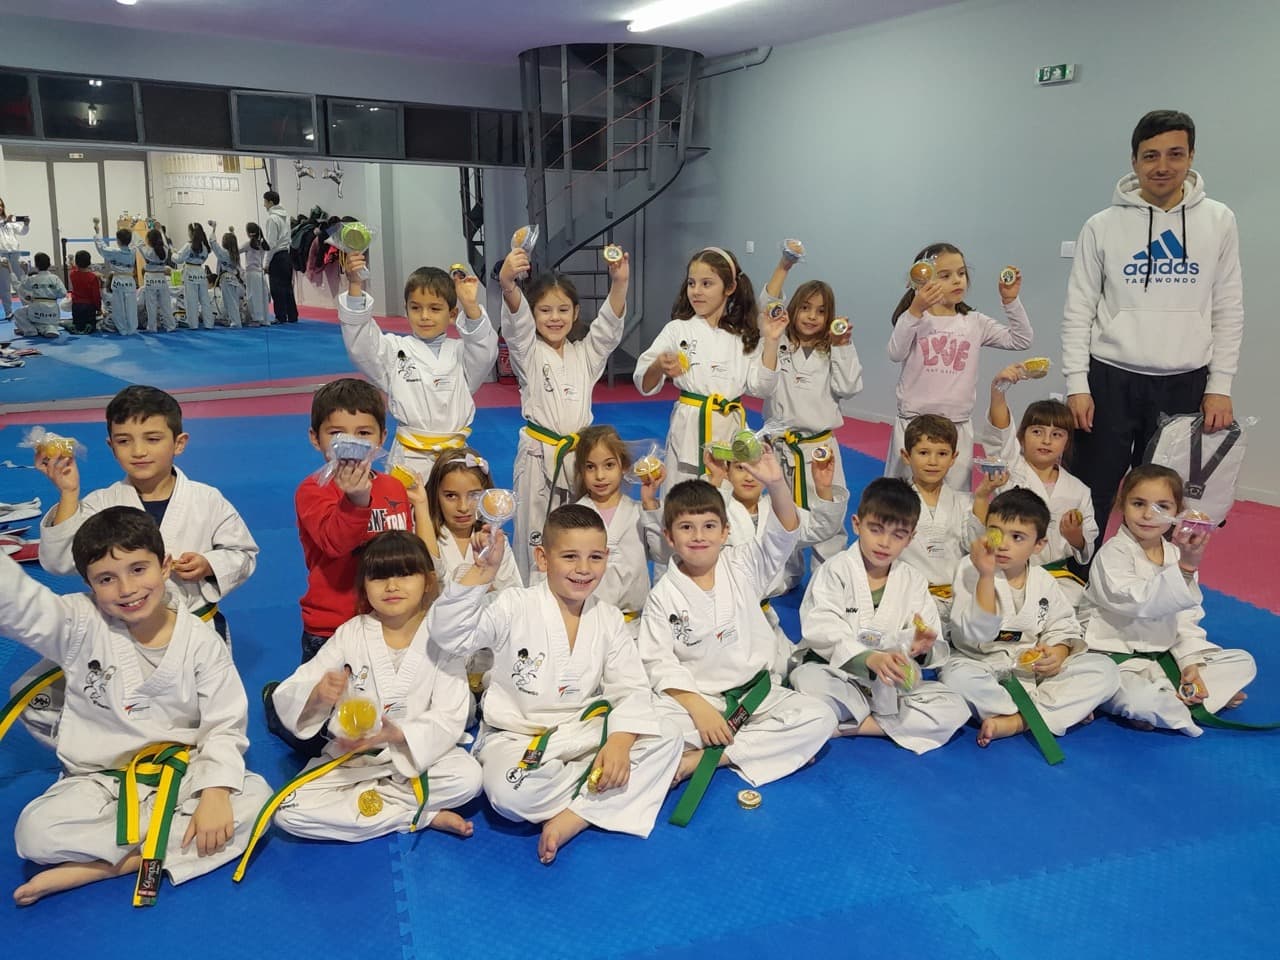 orion-alimos-taekwondo-kopi-pitas-sportshunter-4